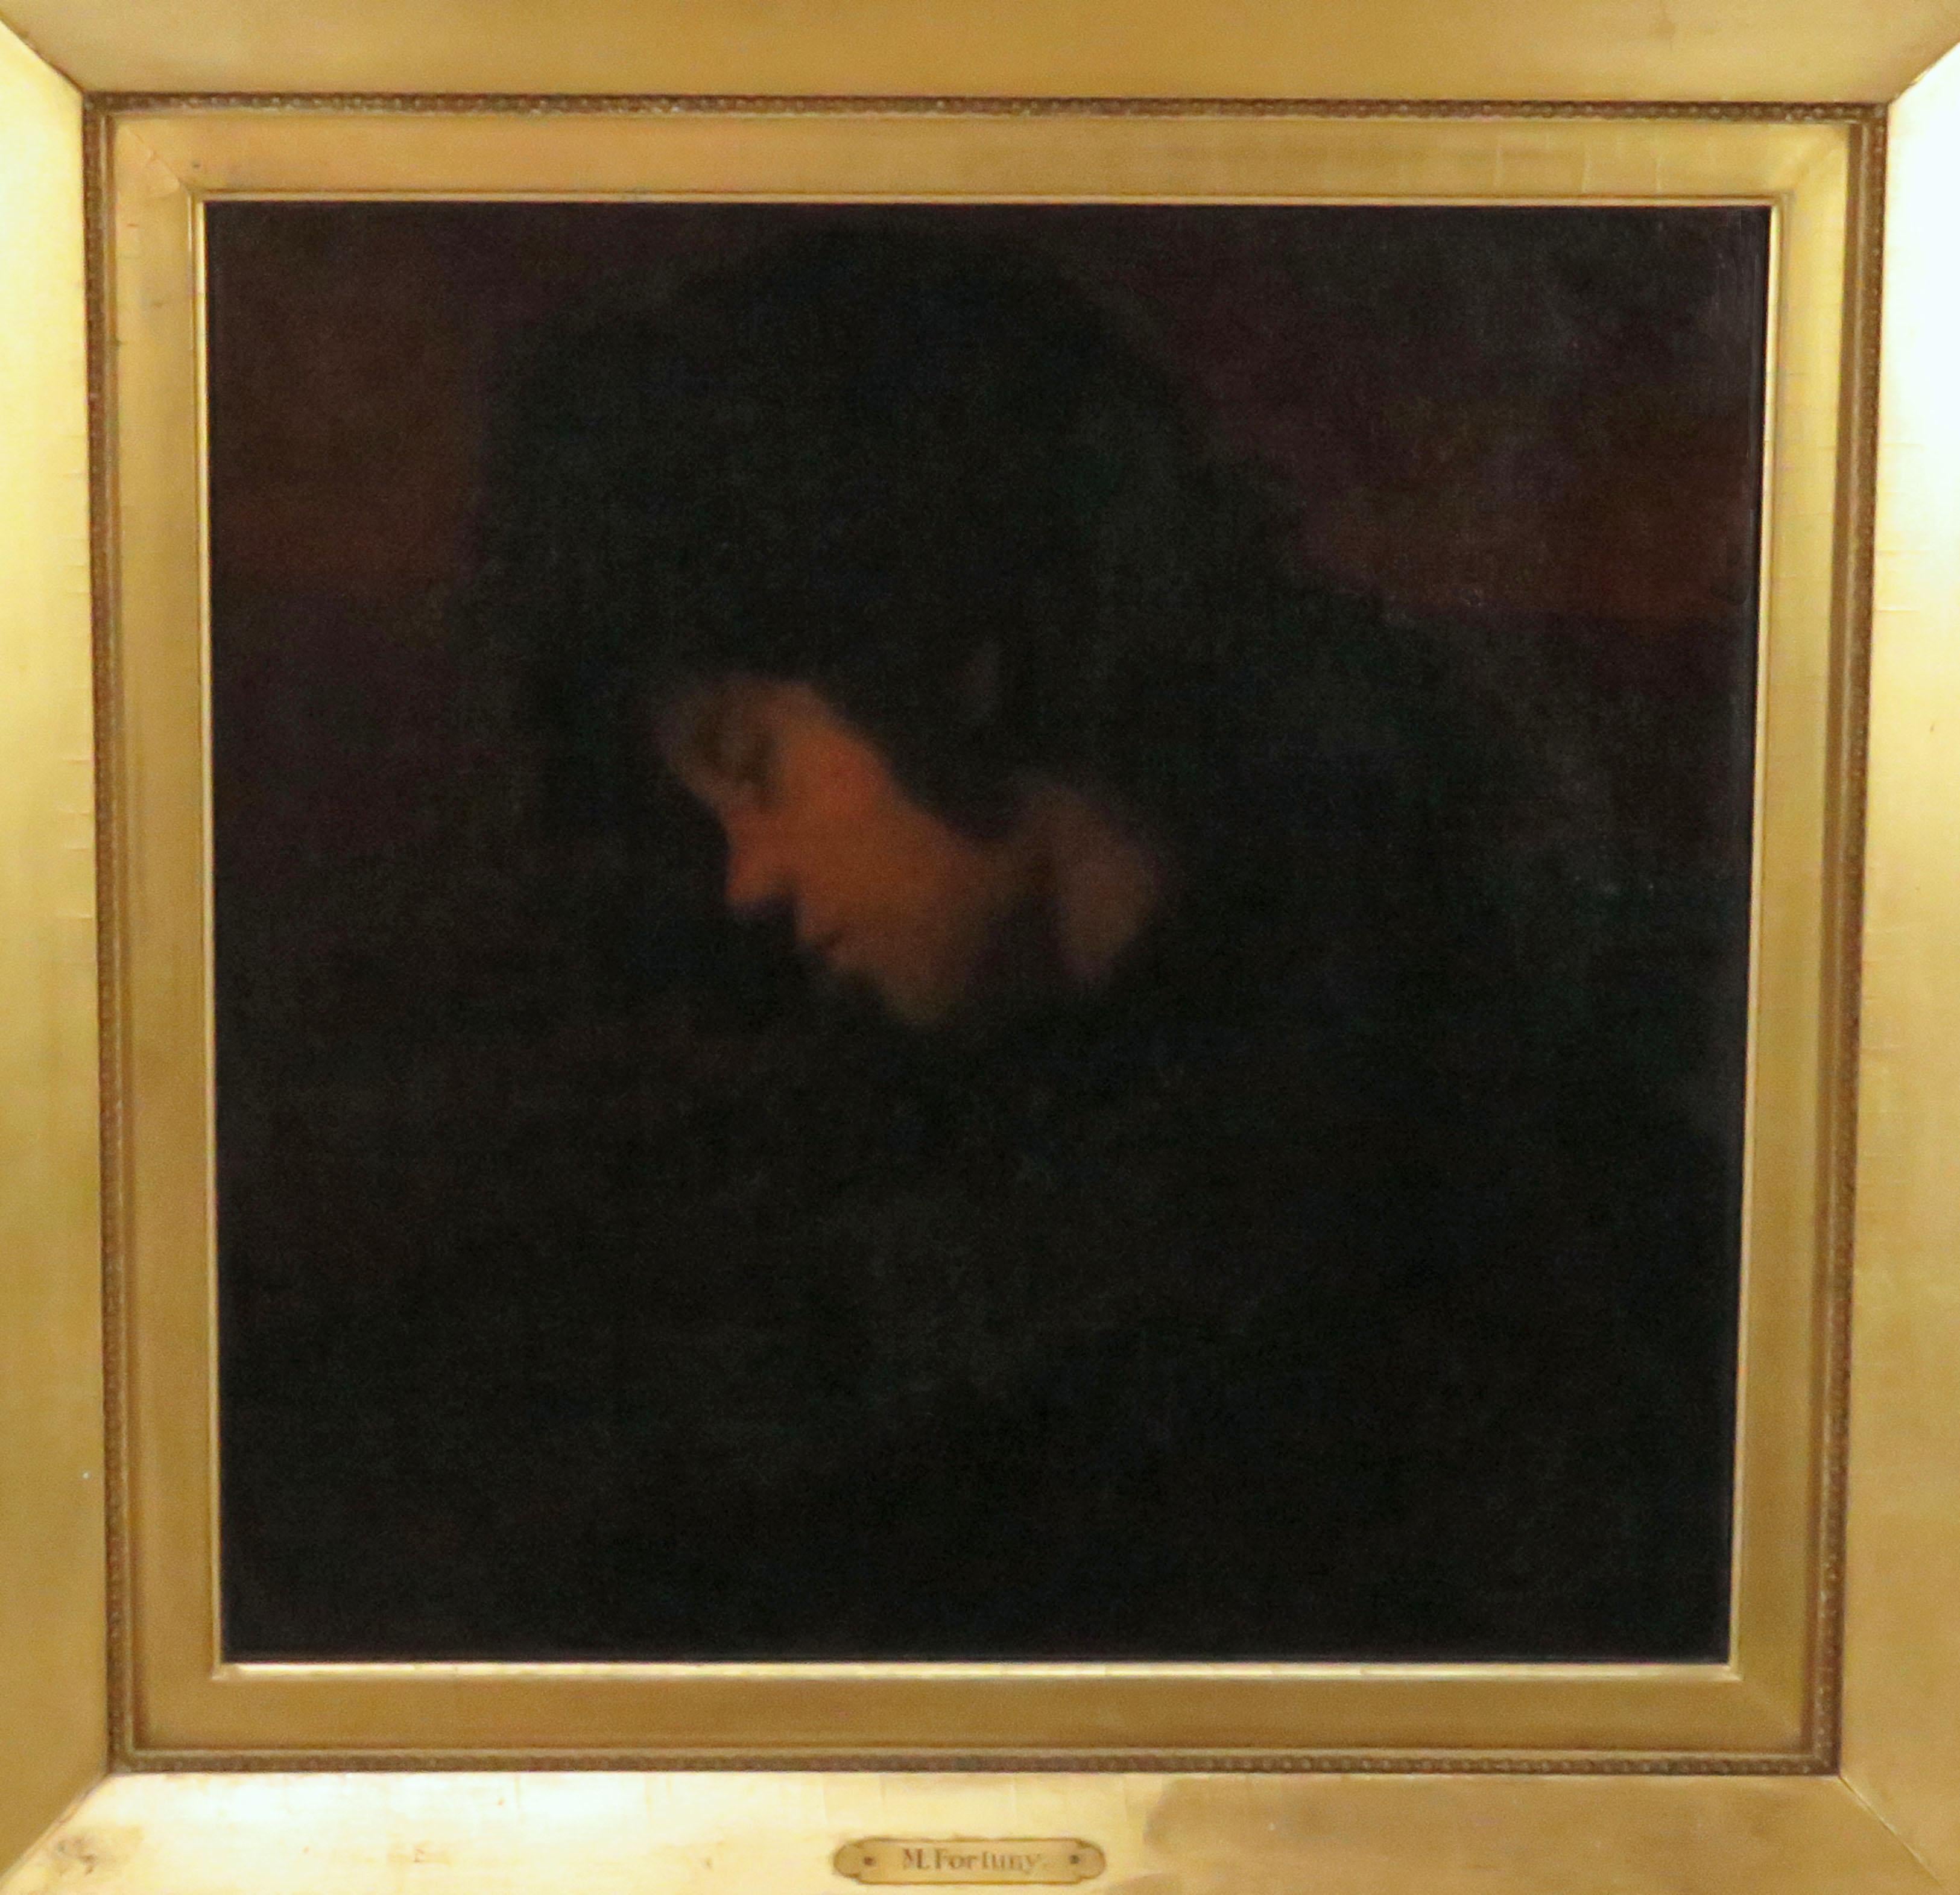 Renaissance-Revival-Profilporträt eines jungen Mannes aus dem späten 19. Jahrhundert, Italienische Schule, ca. 1880.

Dieses stimmungsvolle Porträt stammt von einer prominenten Familie aus North Shore of Boston. Der vergoldete Rahmen trägt eine